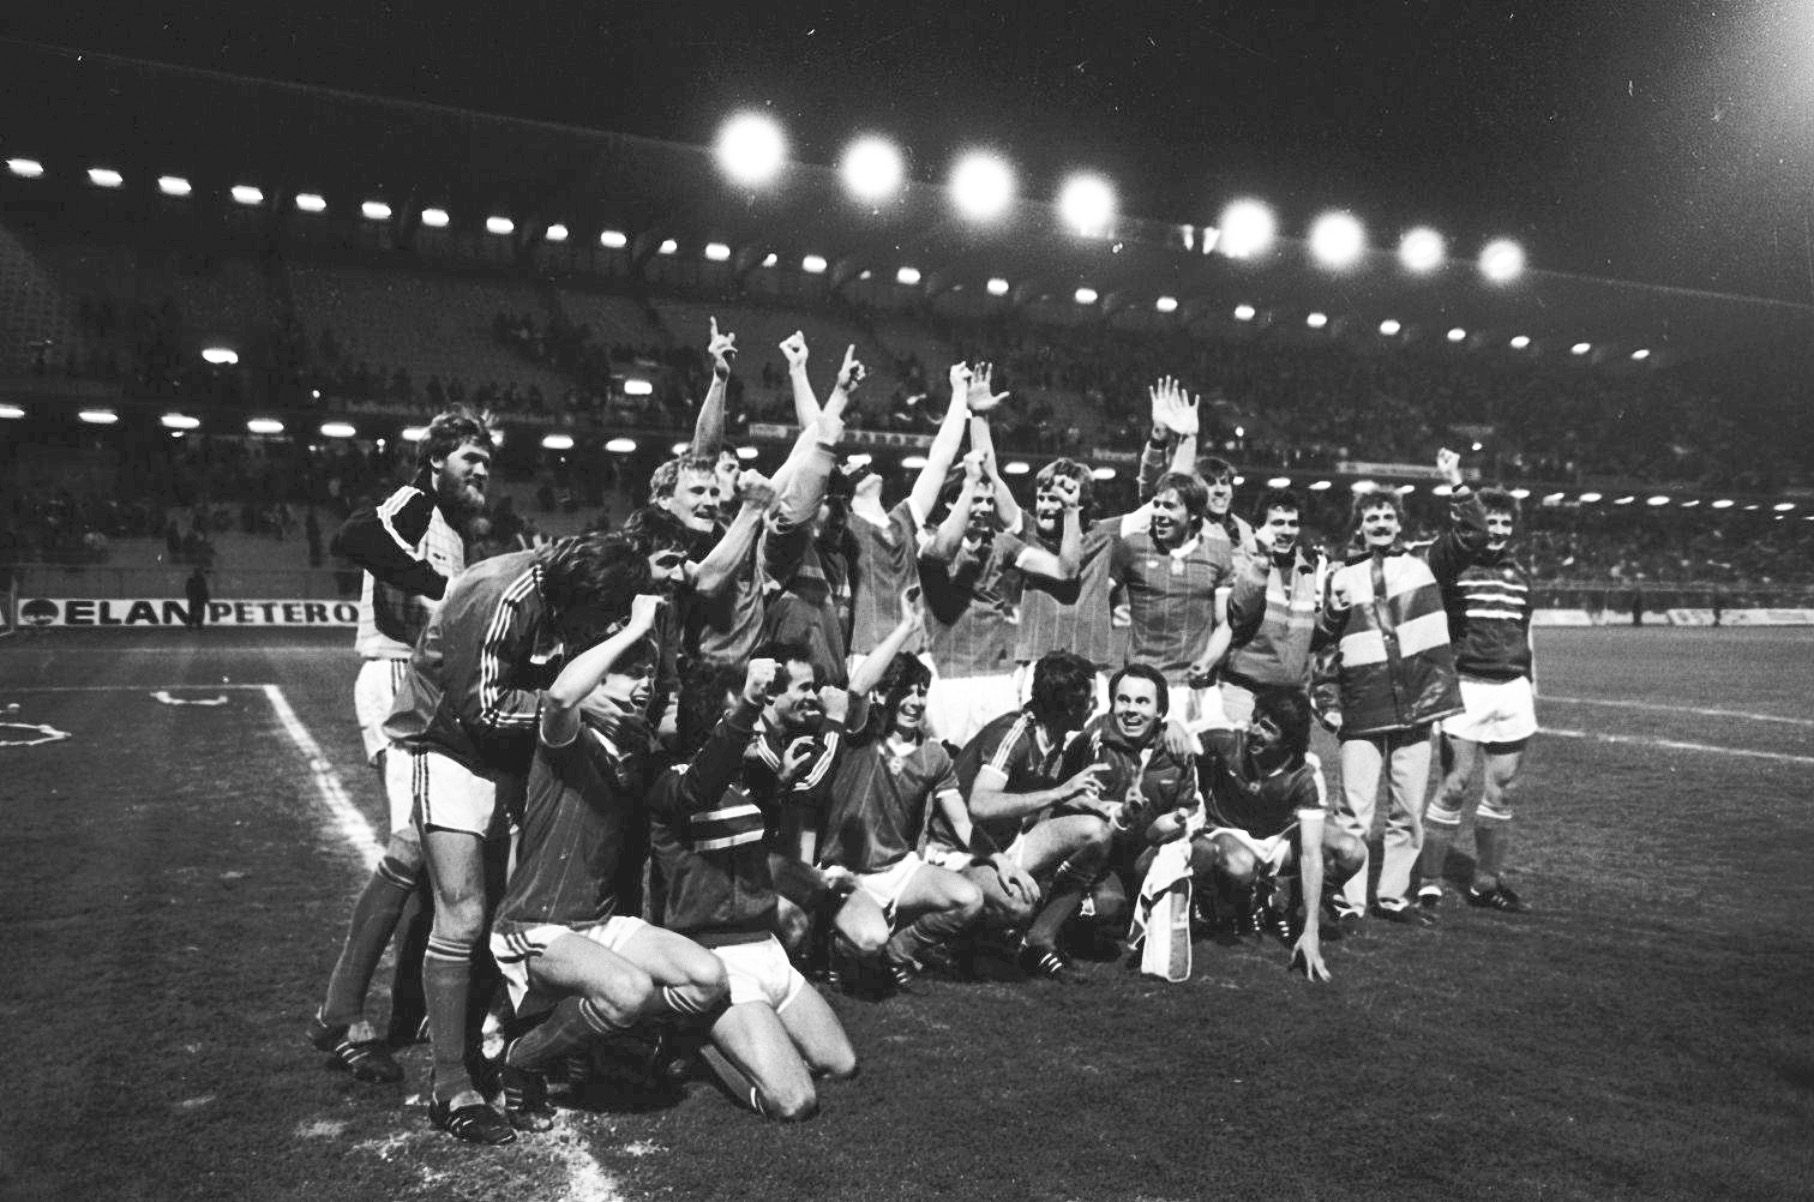 Focisulit tartott a válogatott Bécsben, a csapat kijutott az 1986-os vb-re / Fotó: Arcanum - Népszava